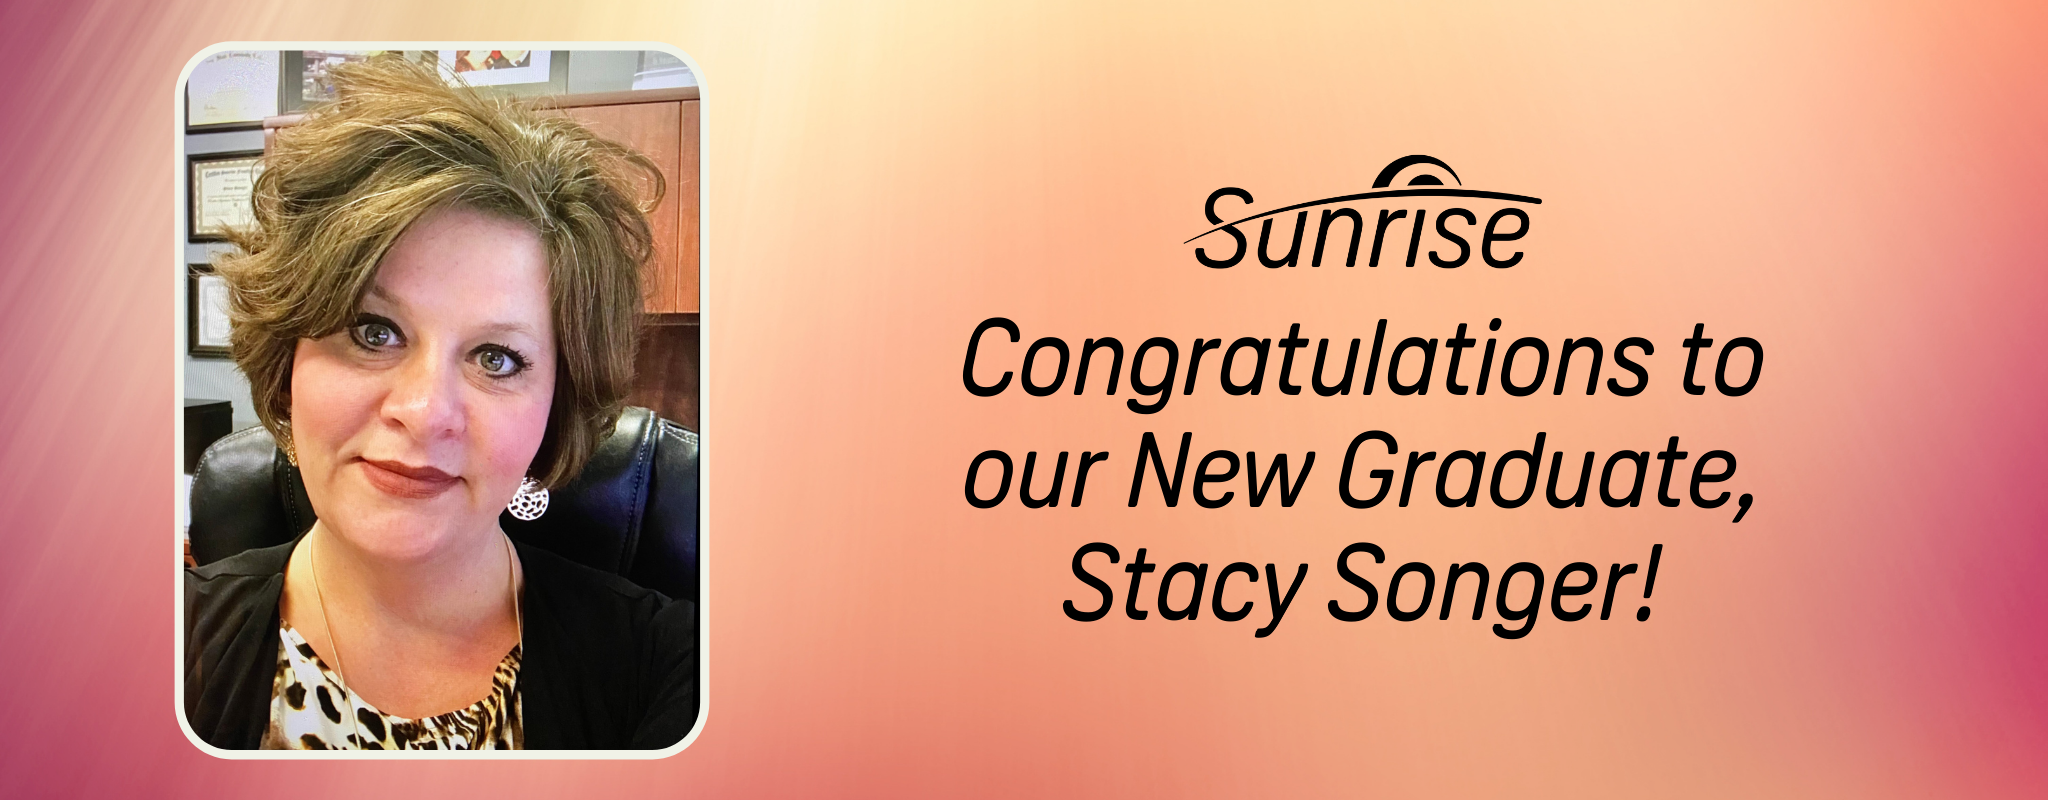 Xin chúc mừng Tân cử nhân của chúng ta, Stacy Songer!